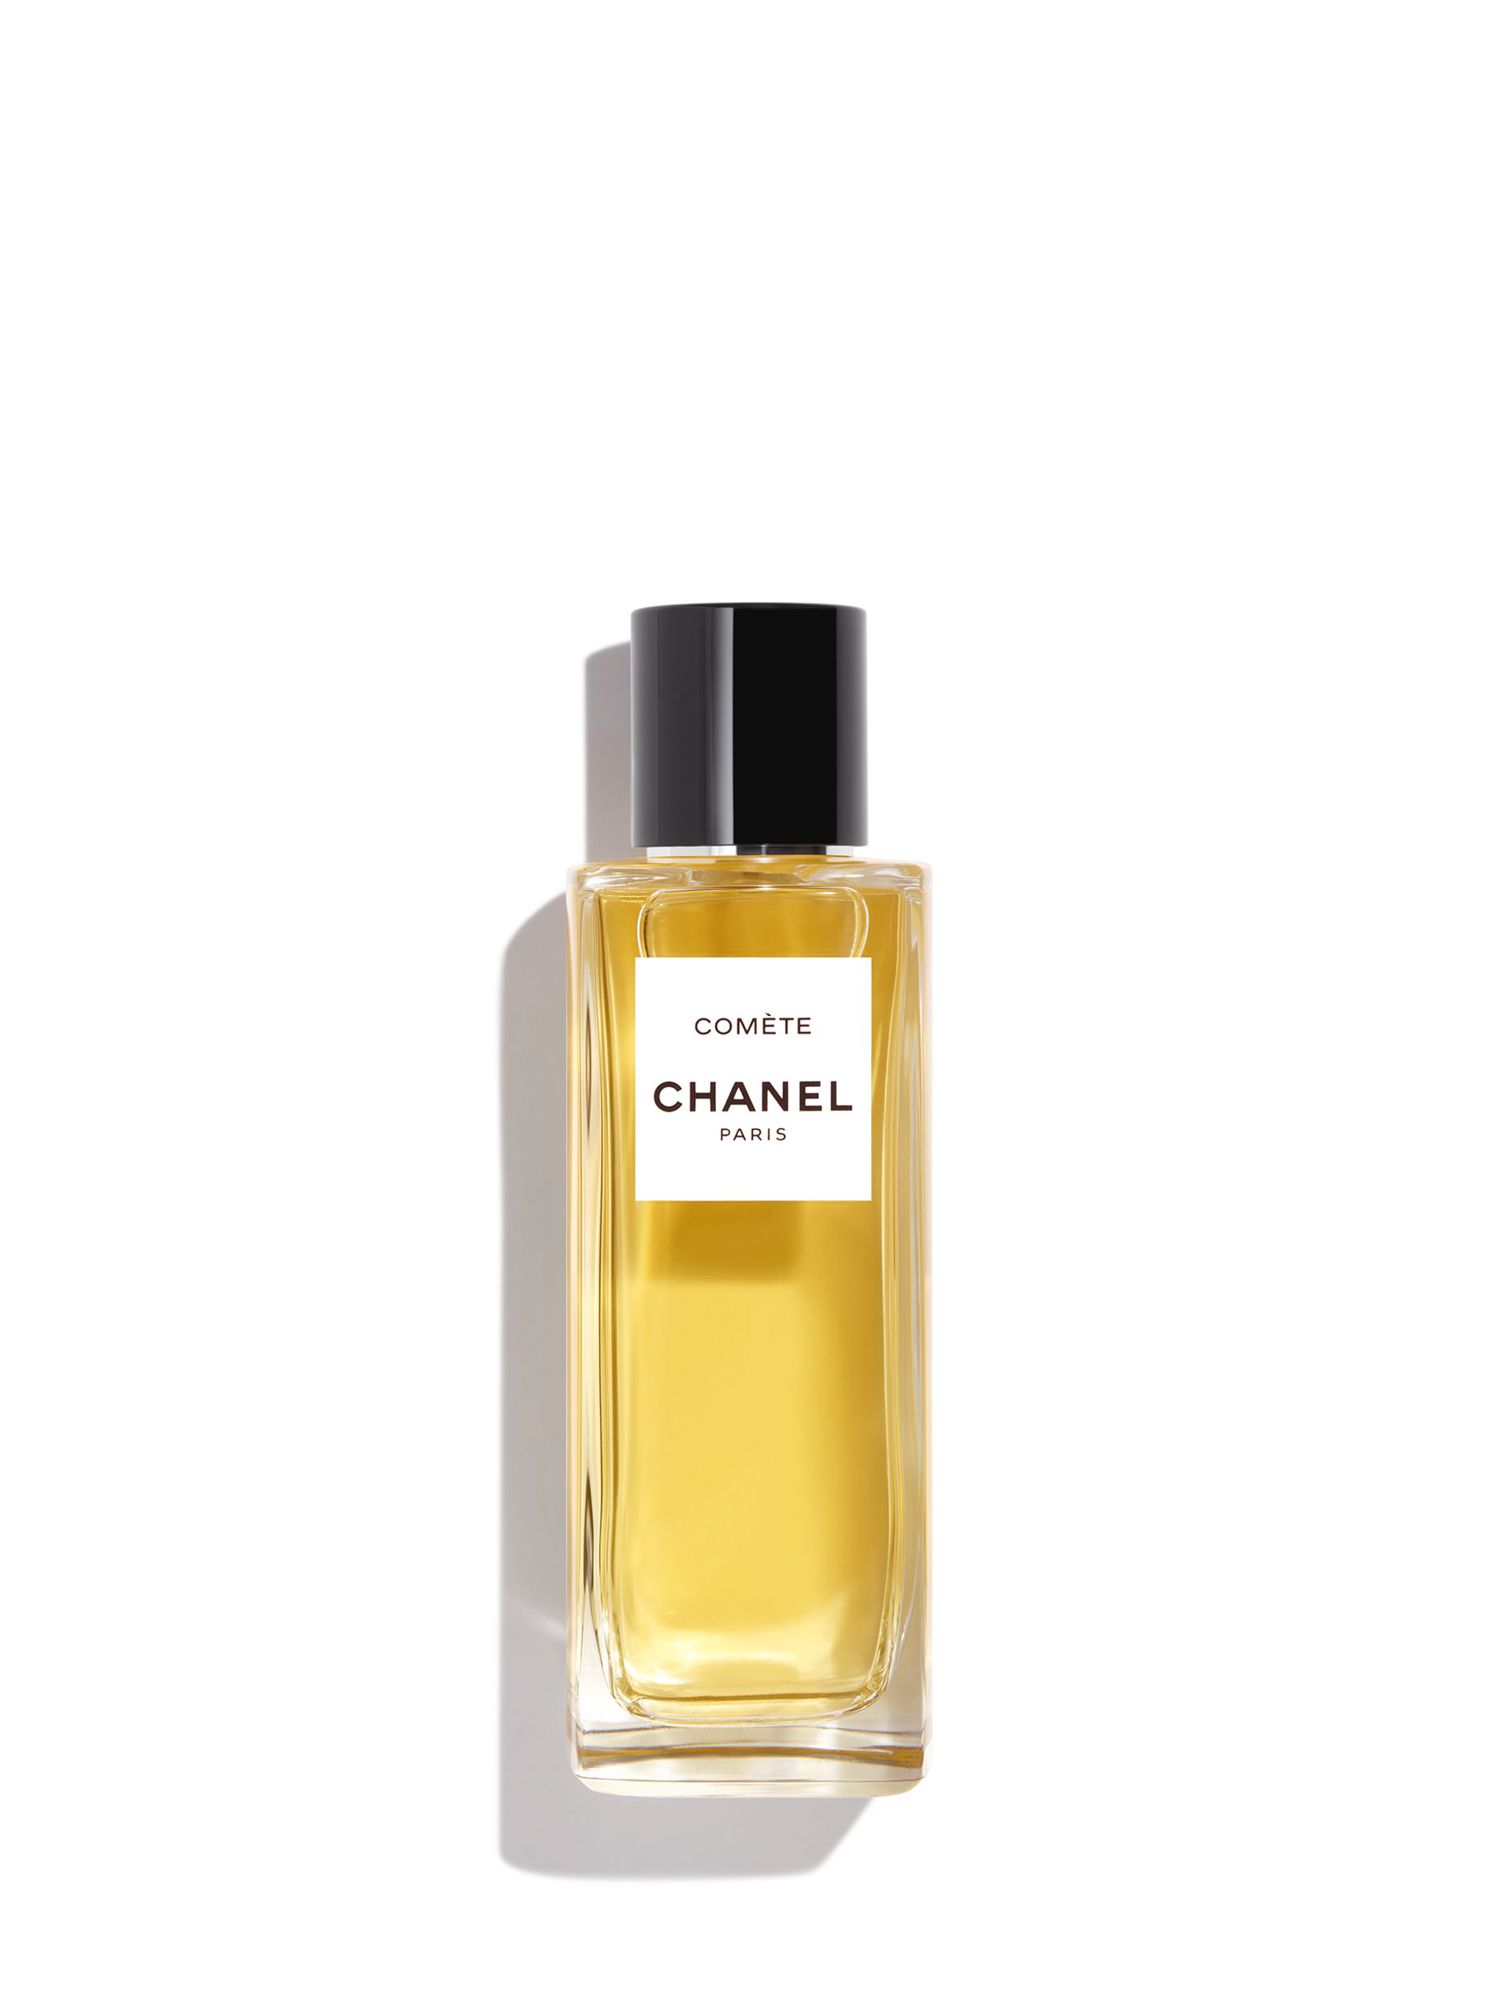 CHANEL Comète Les Exclusifs de CHANEL - Eau de Parfum, 75ml 1